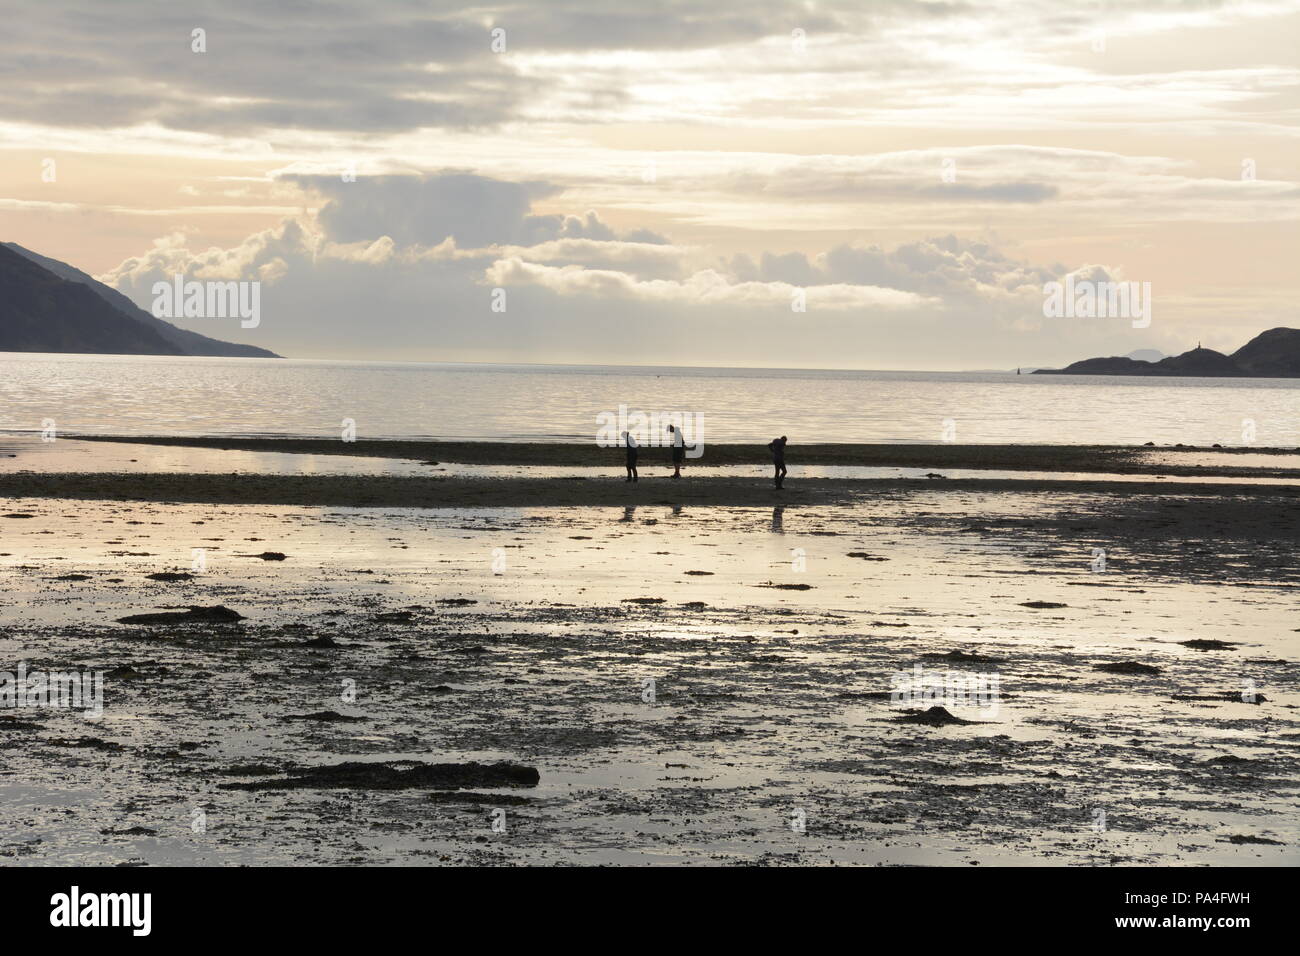 Trois personnes épaves dans la zone intertidale de l'océan Atlantique au coucher du soleil dans la ville de Inverie, Knoydart Peninsula, Ecosse, Royaume-Uni. Banque D'Images